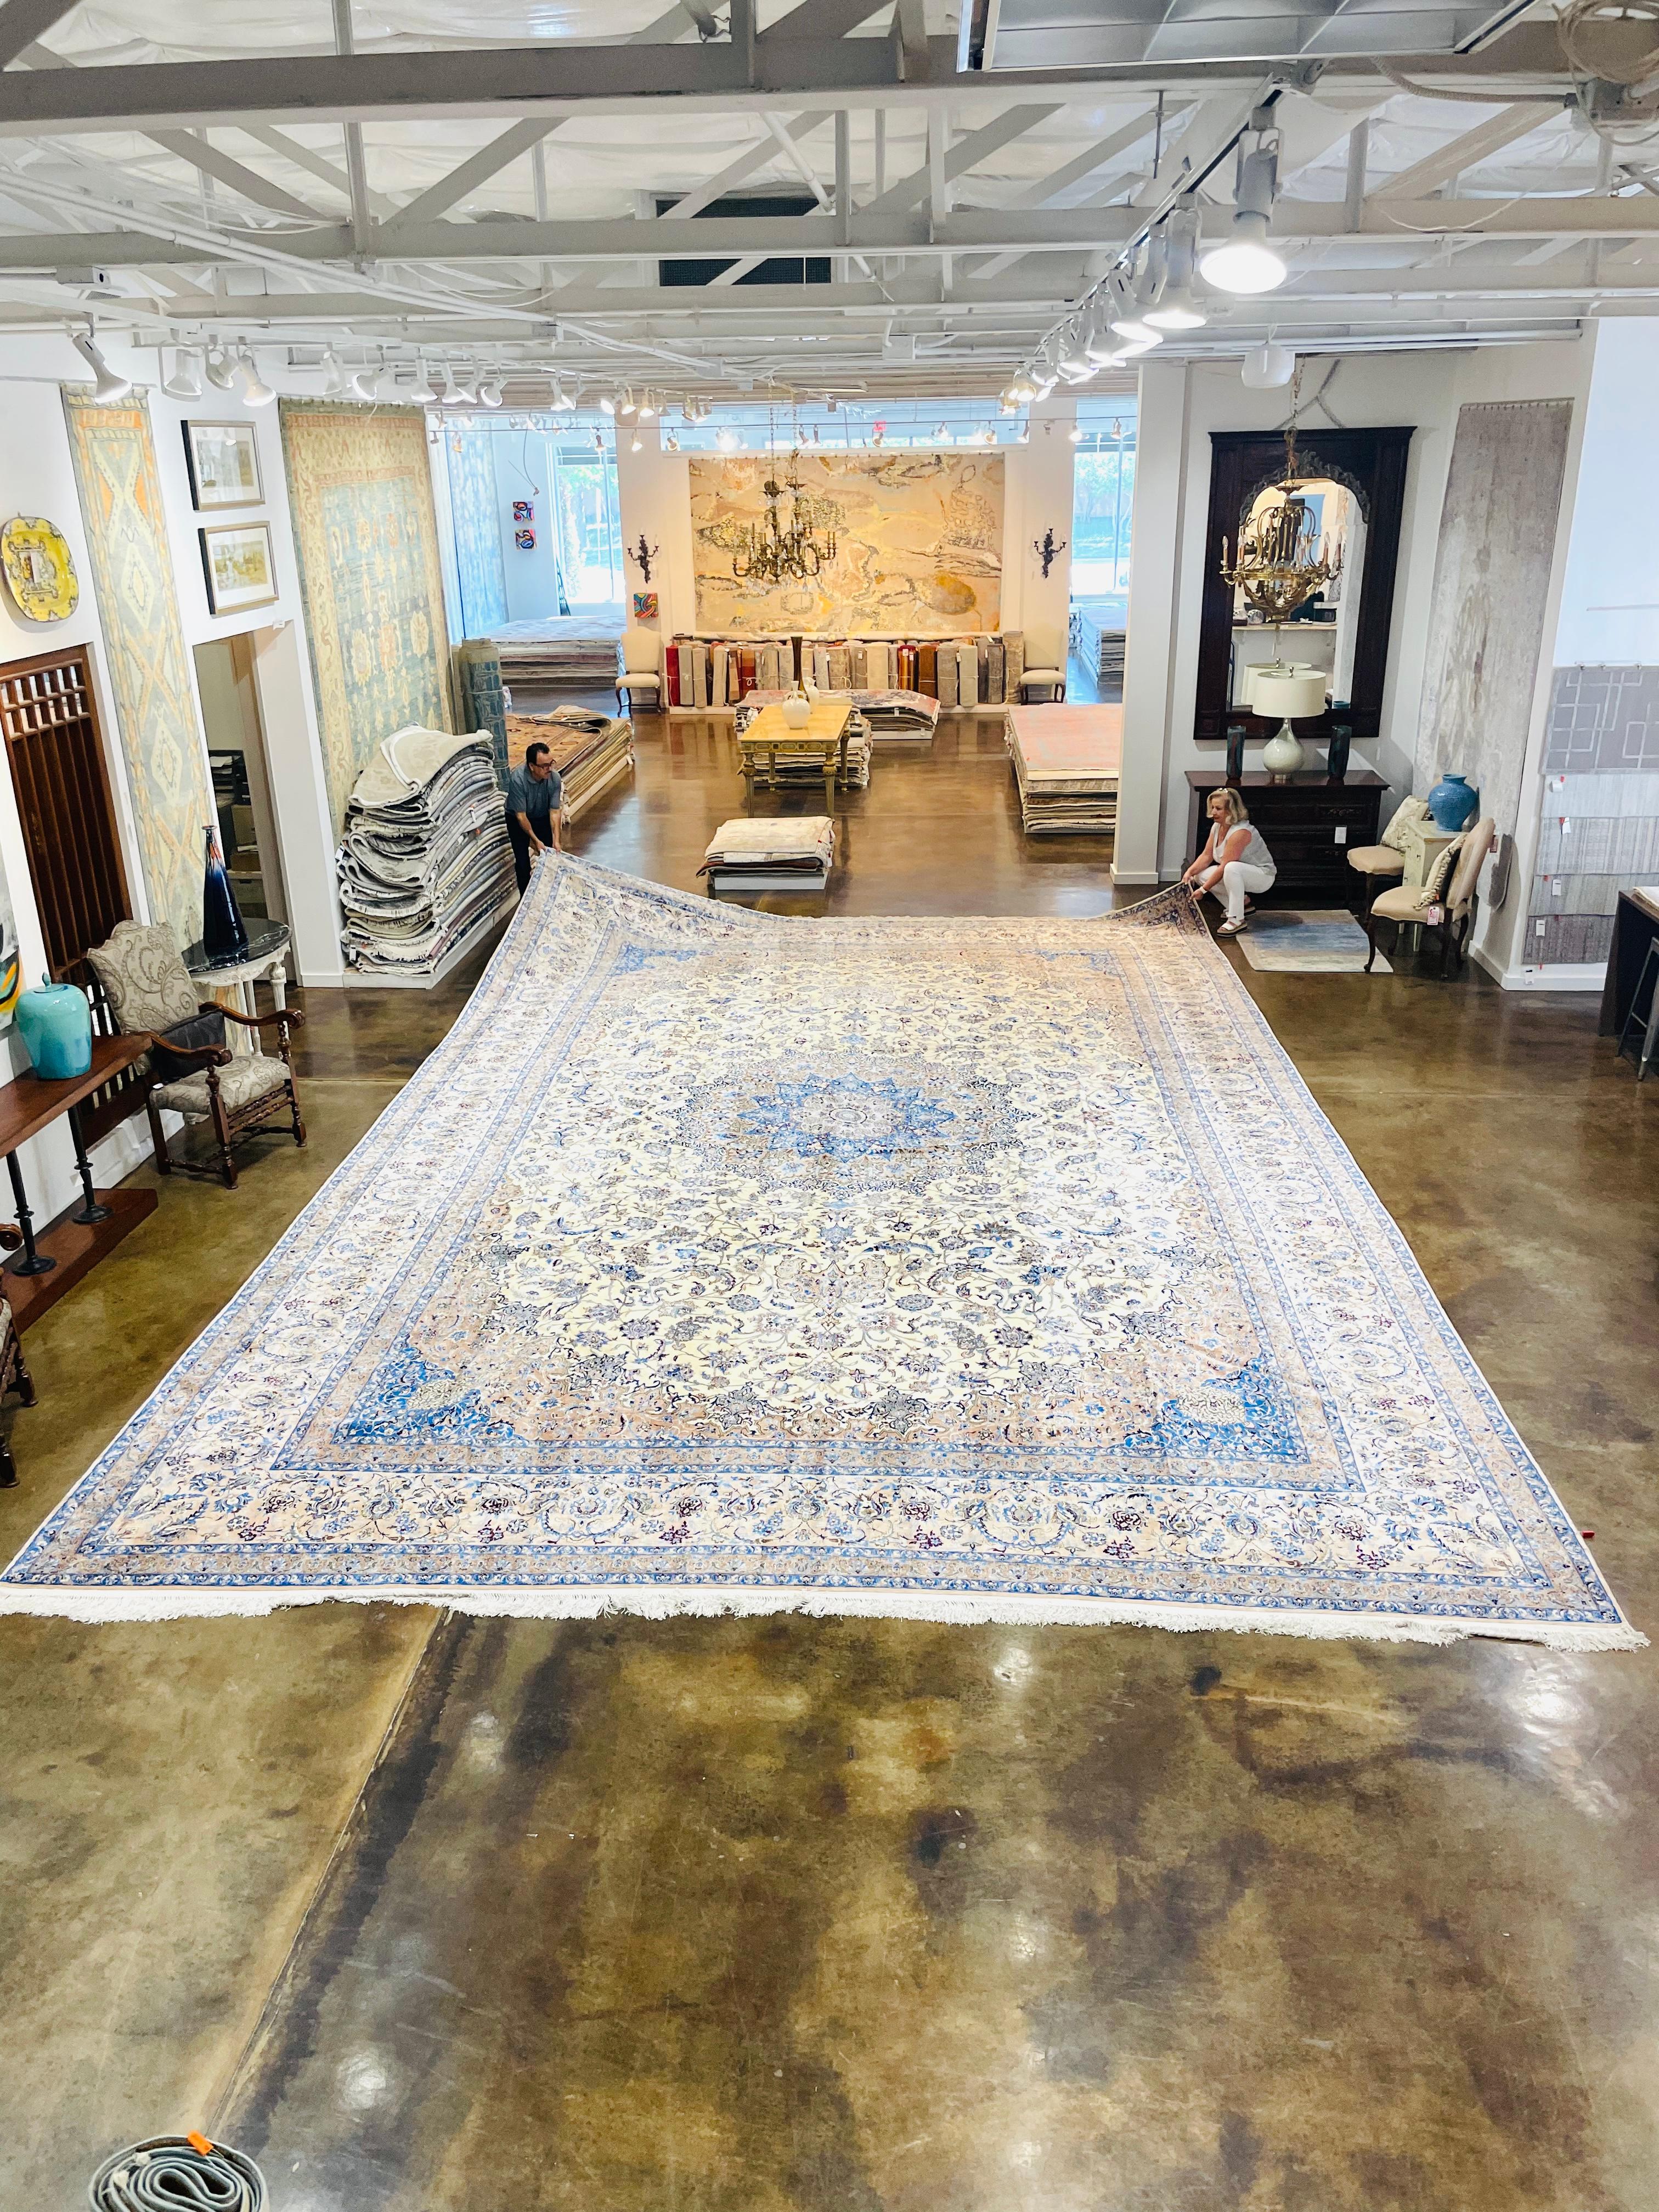 Ce magnifique tapis persan Nain de taille palace (17,1' x 27') est tissé dans une palette de couleurs délicates, avec des nuances d'ivoire, de bleu et de beige mises en évidence dans le motif floral et le médaillon central. Cette pièce est produite